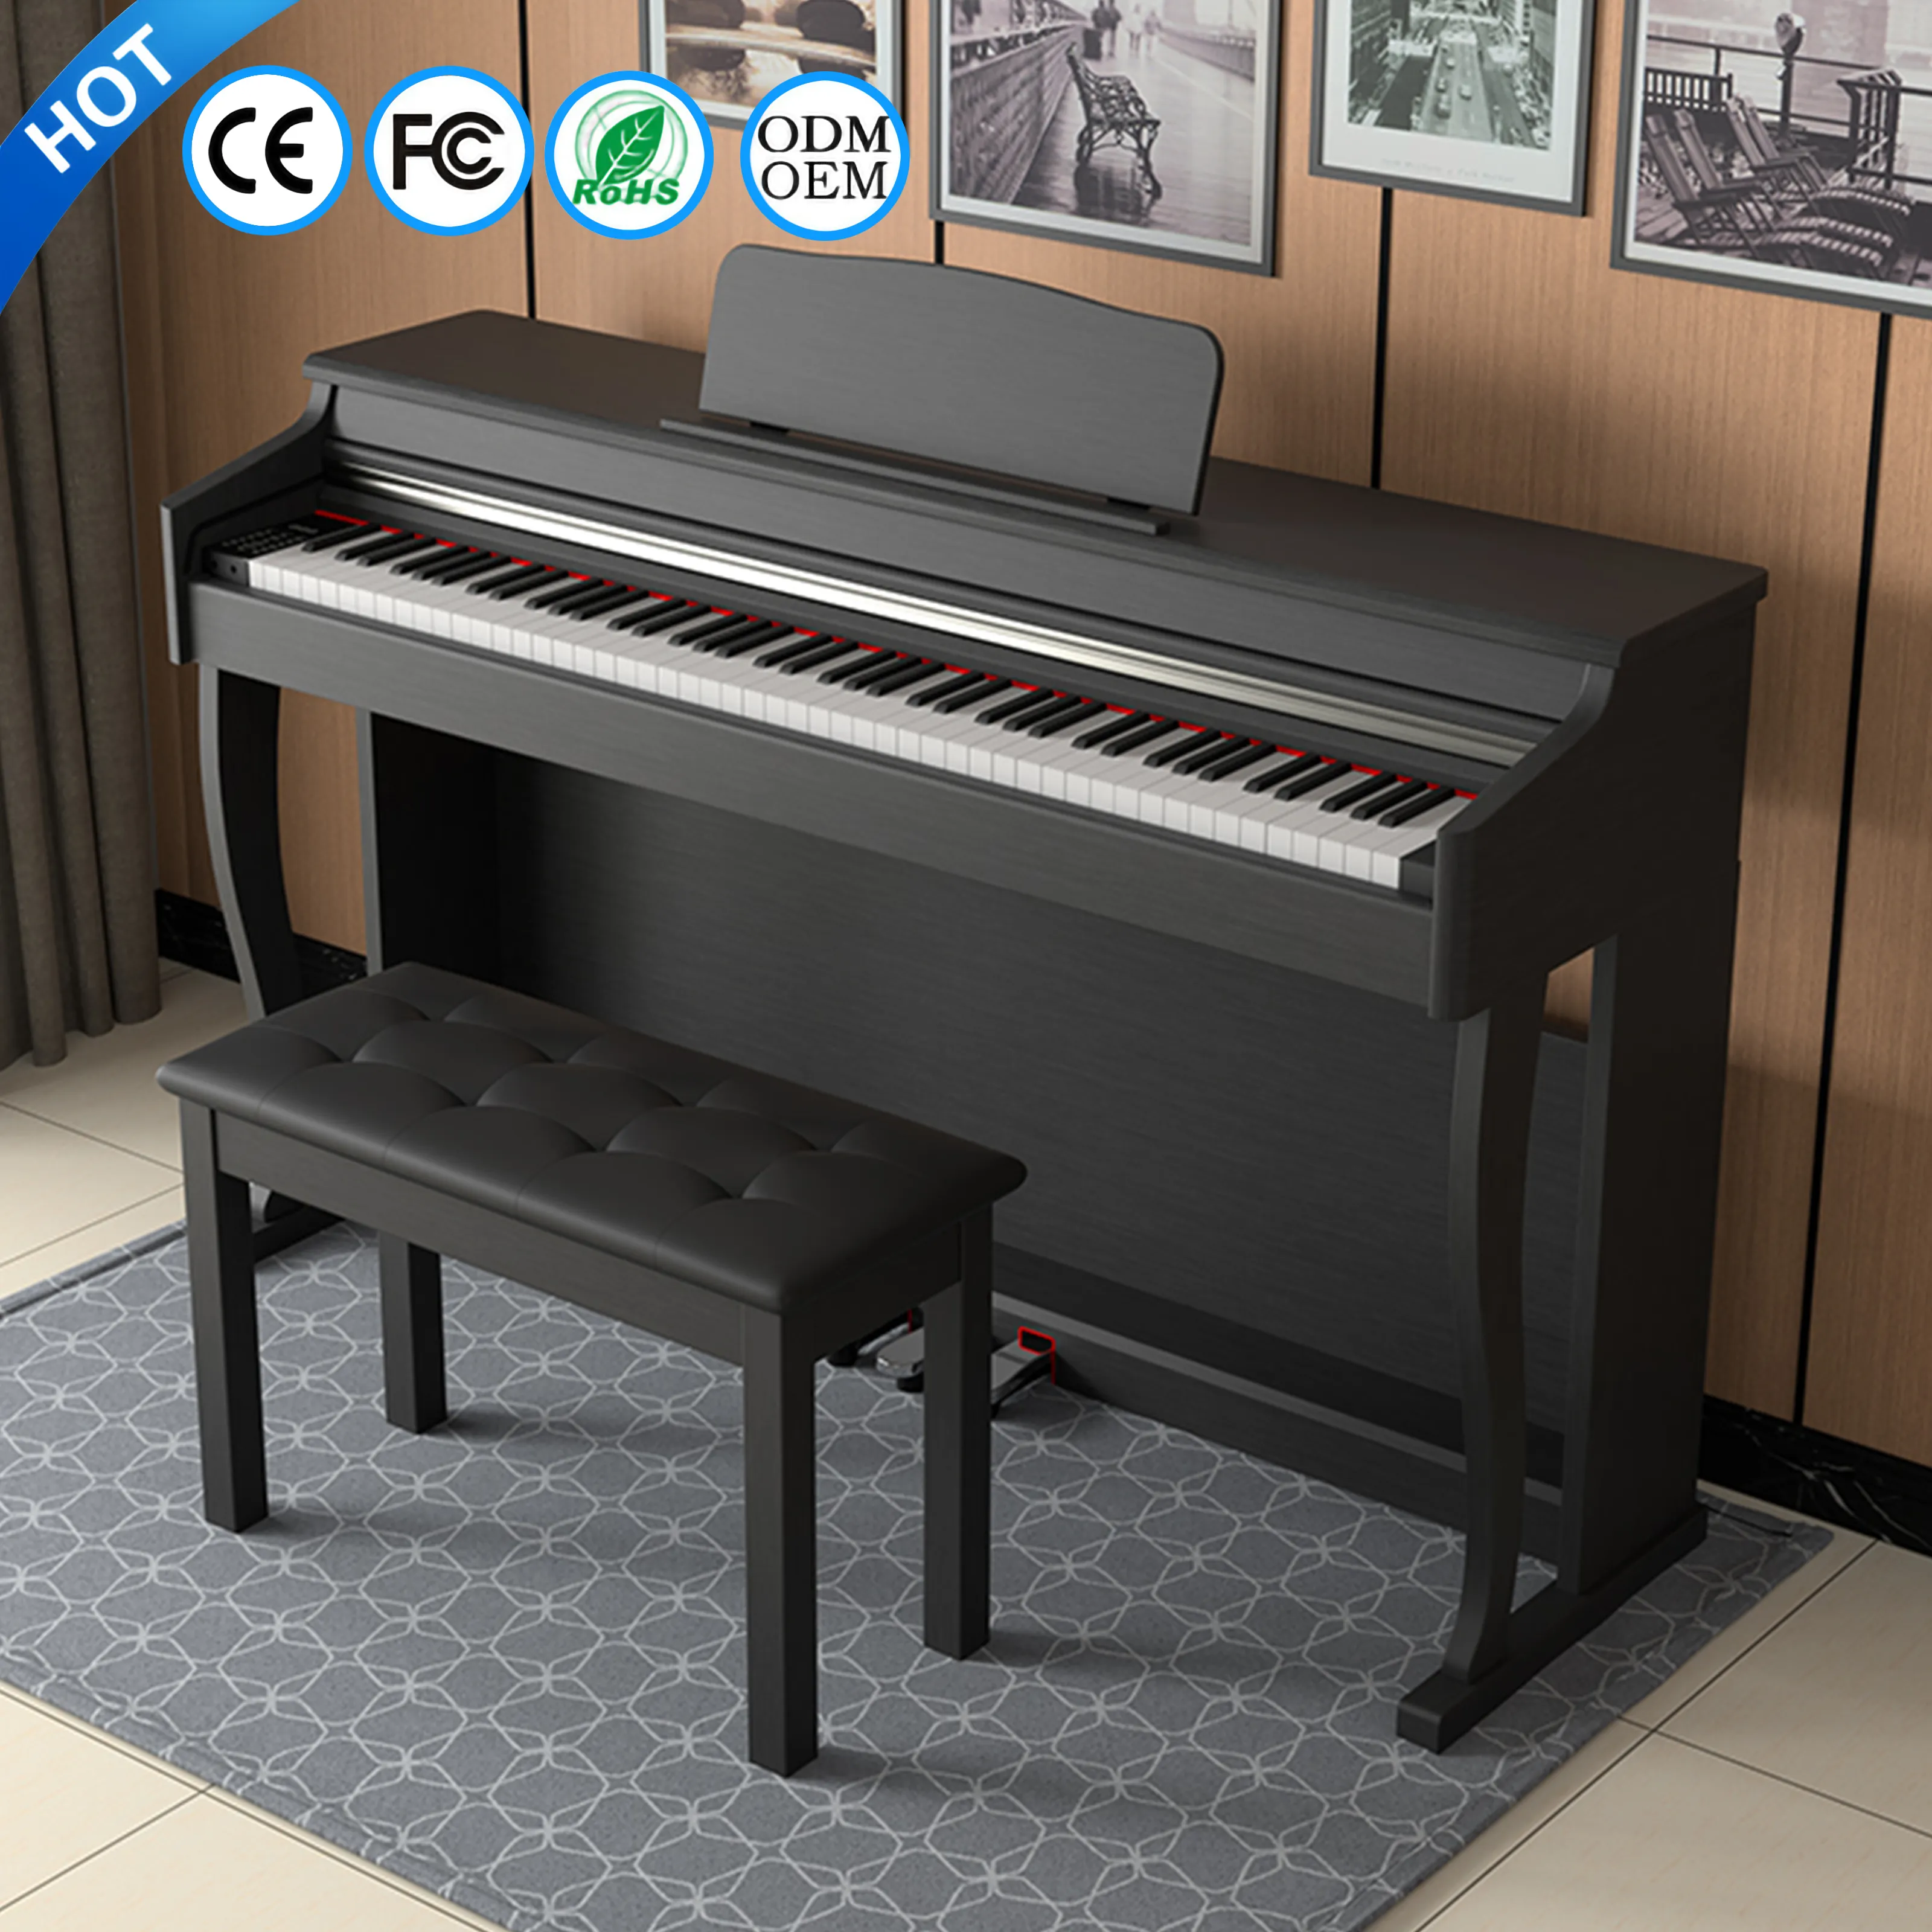 เปียโนไฟฟ้า Grand Electronique 88สัมผัส,คีย์บอร์ดดิจิตอลเปียโน88คีย์เครื่องดนตรีเปียโน